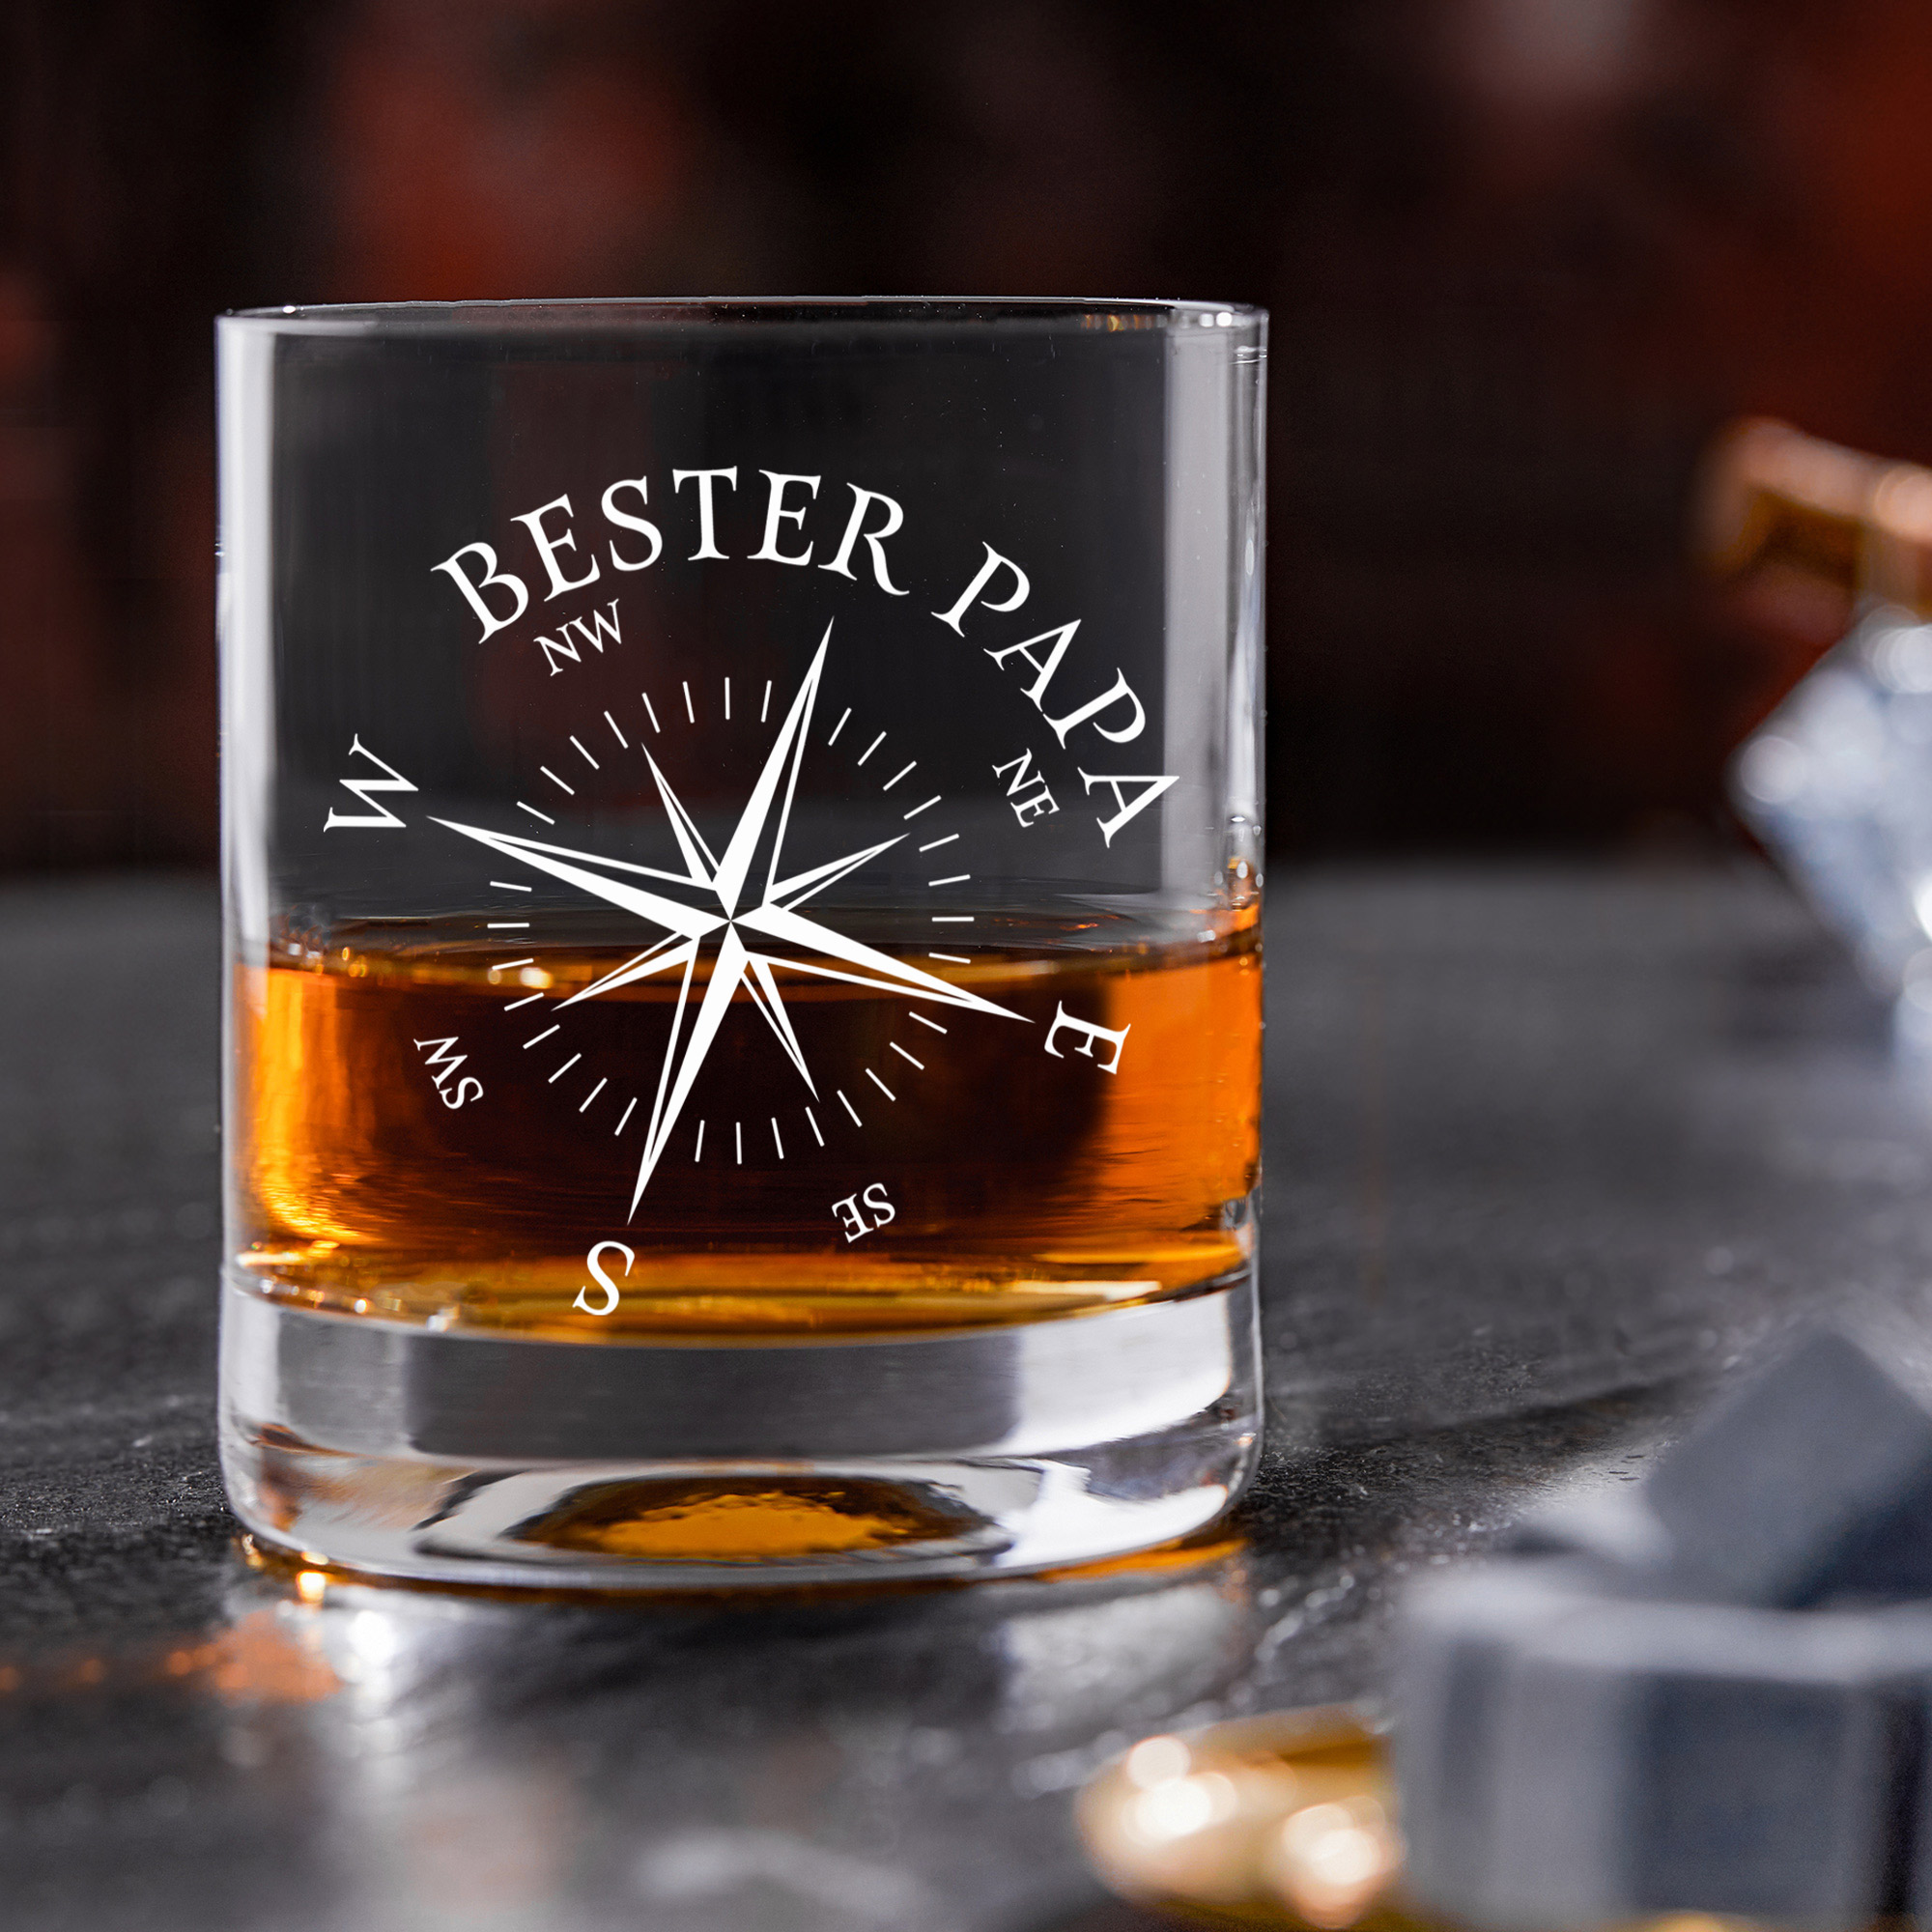 Whiskey Glas mit Gravur, Whisky Geschenk für Papa mit Kompass Motiv, Whisky Zubehör als Vatertagsgeschenk, Graviertes Whisky Glas im Tumbler Stil